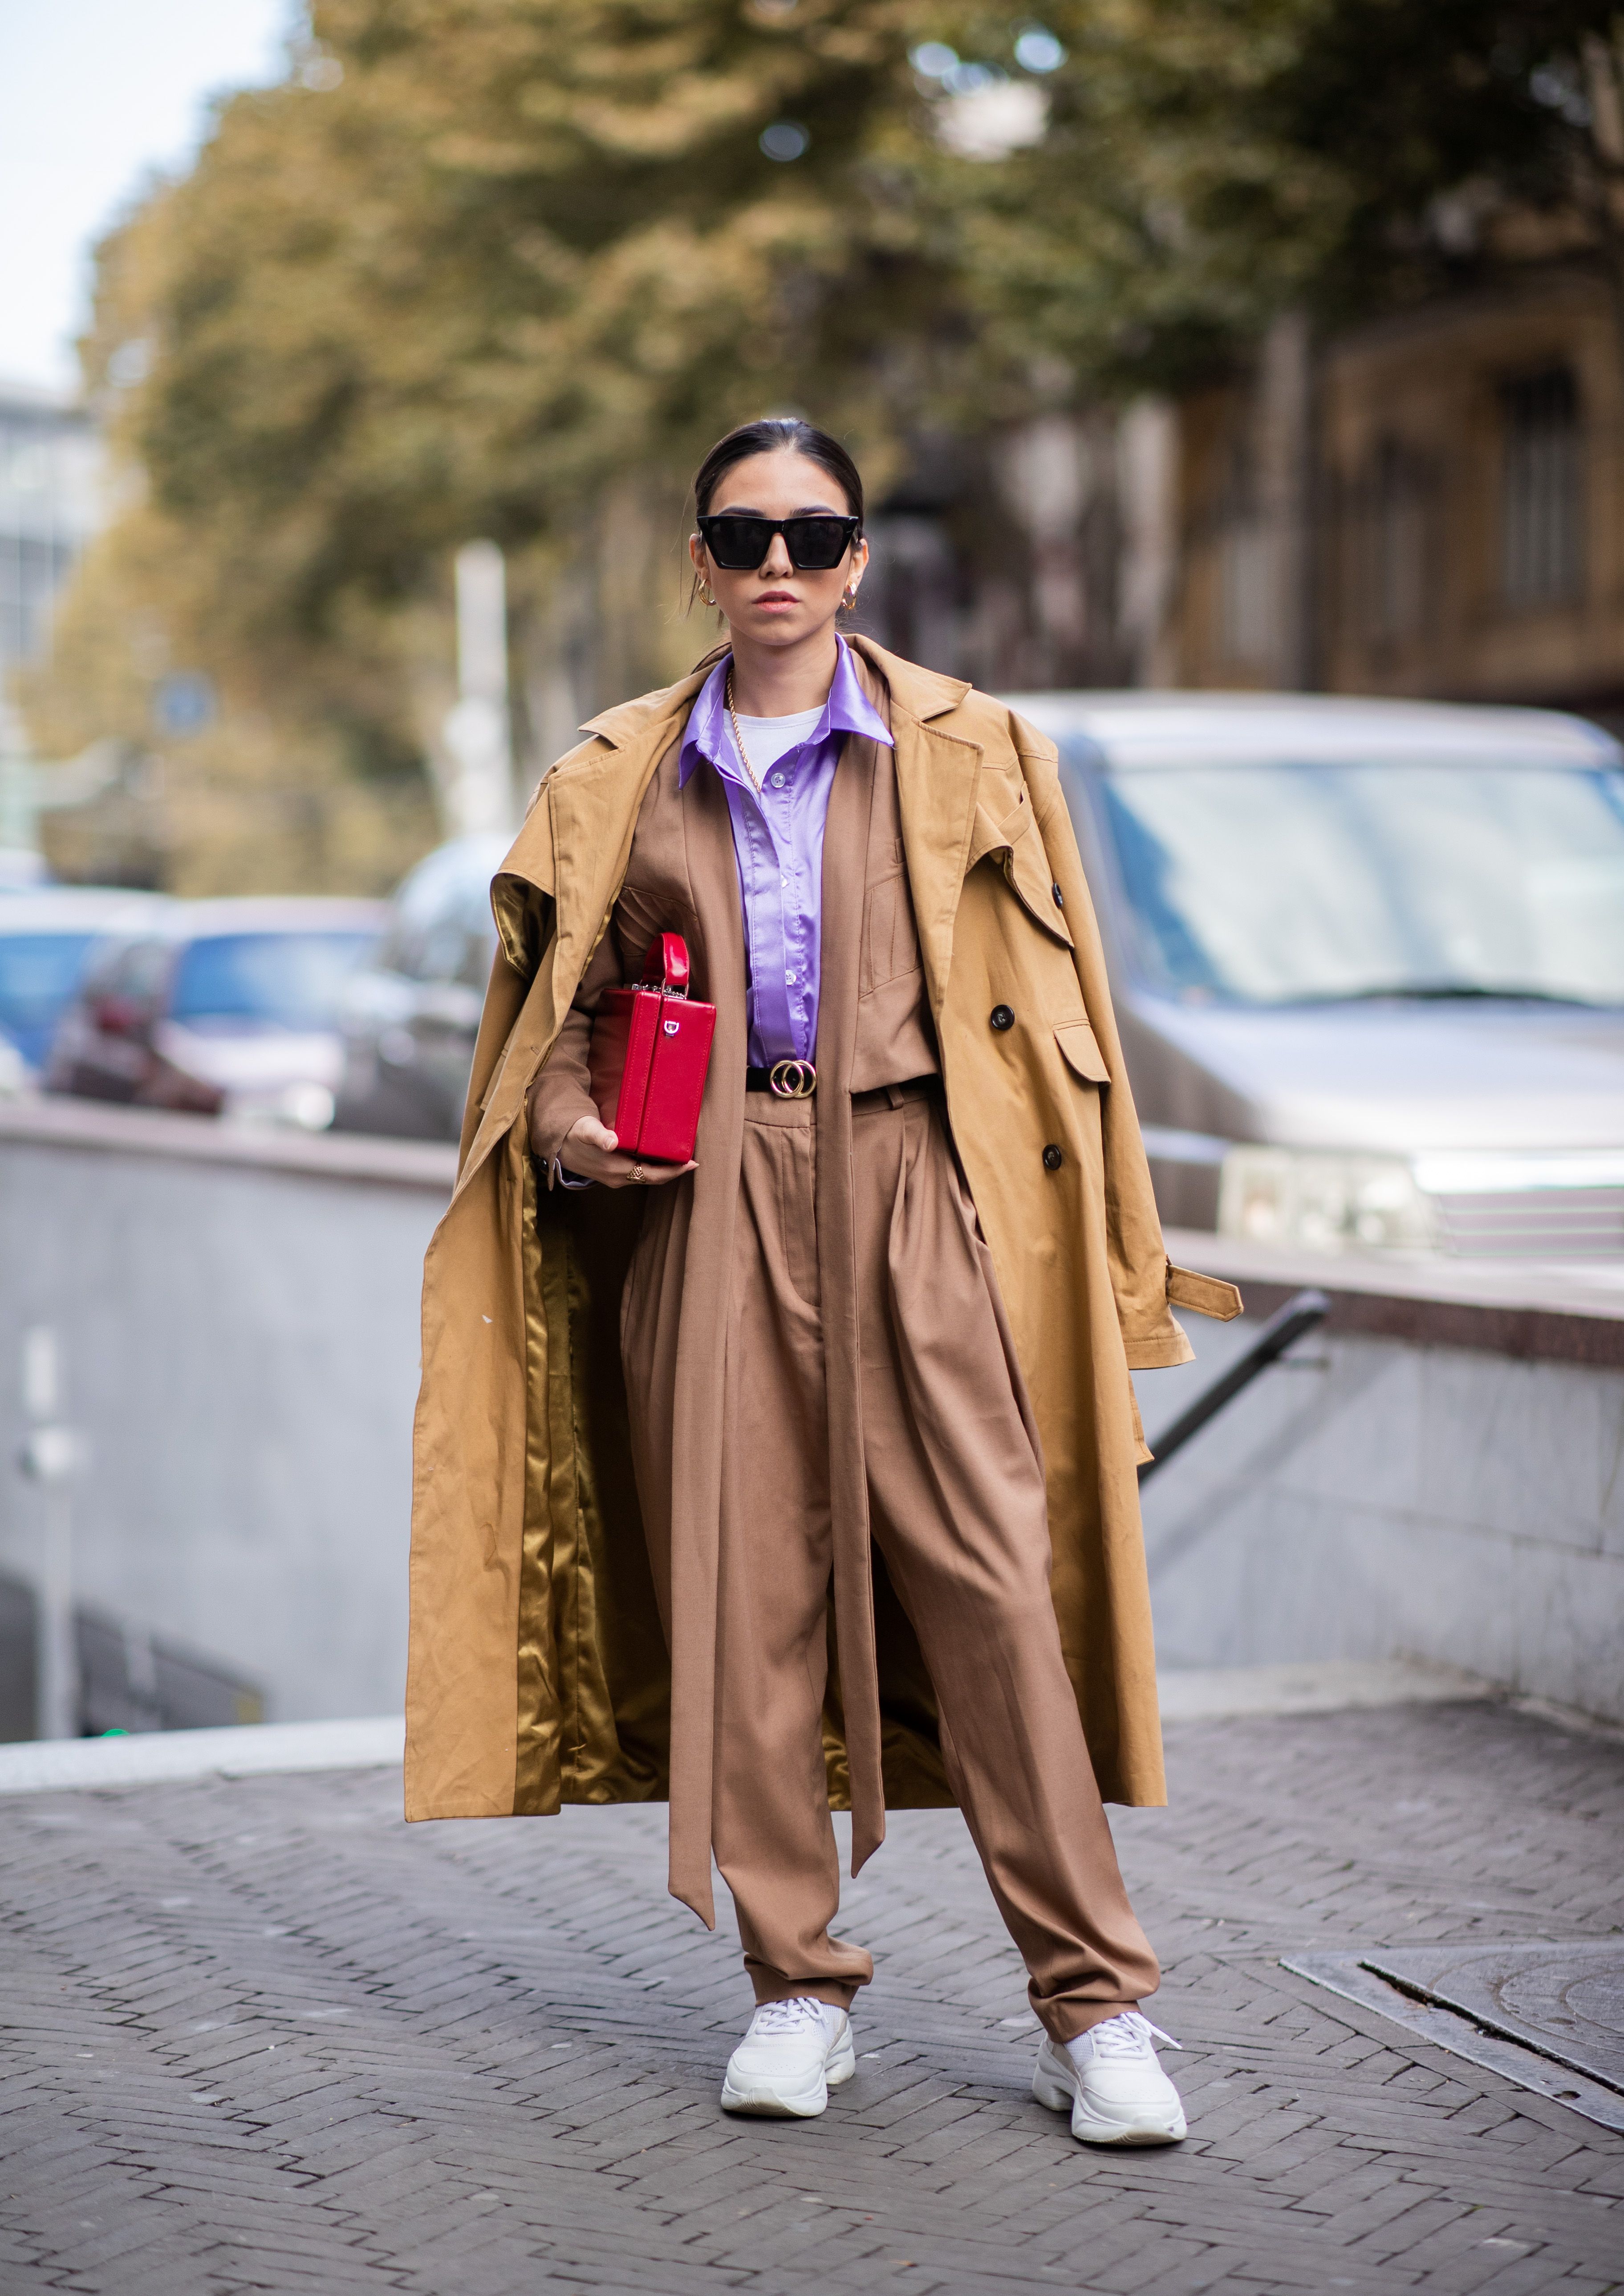 Elegancia es llevar la gabardina más bonita de Louis Vuitton